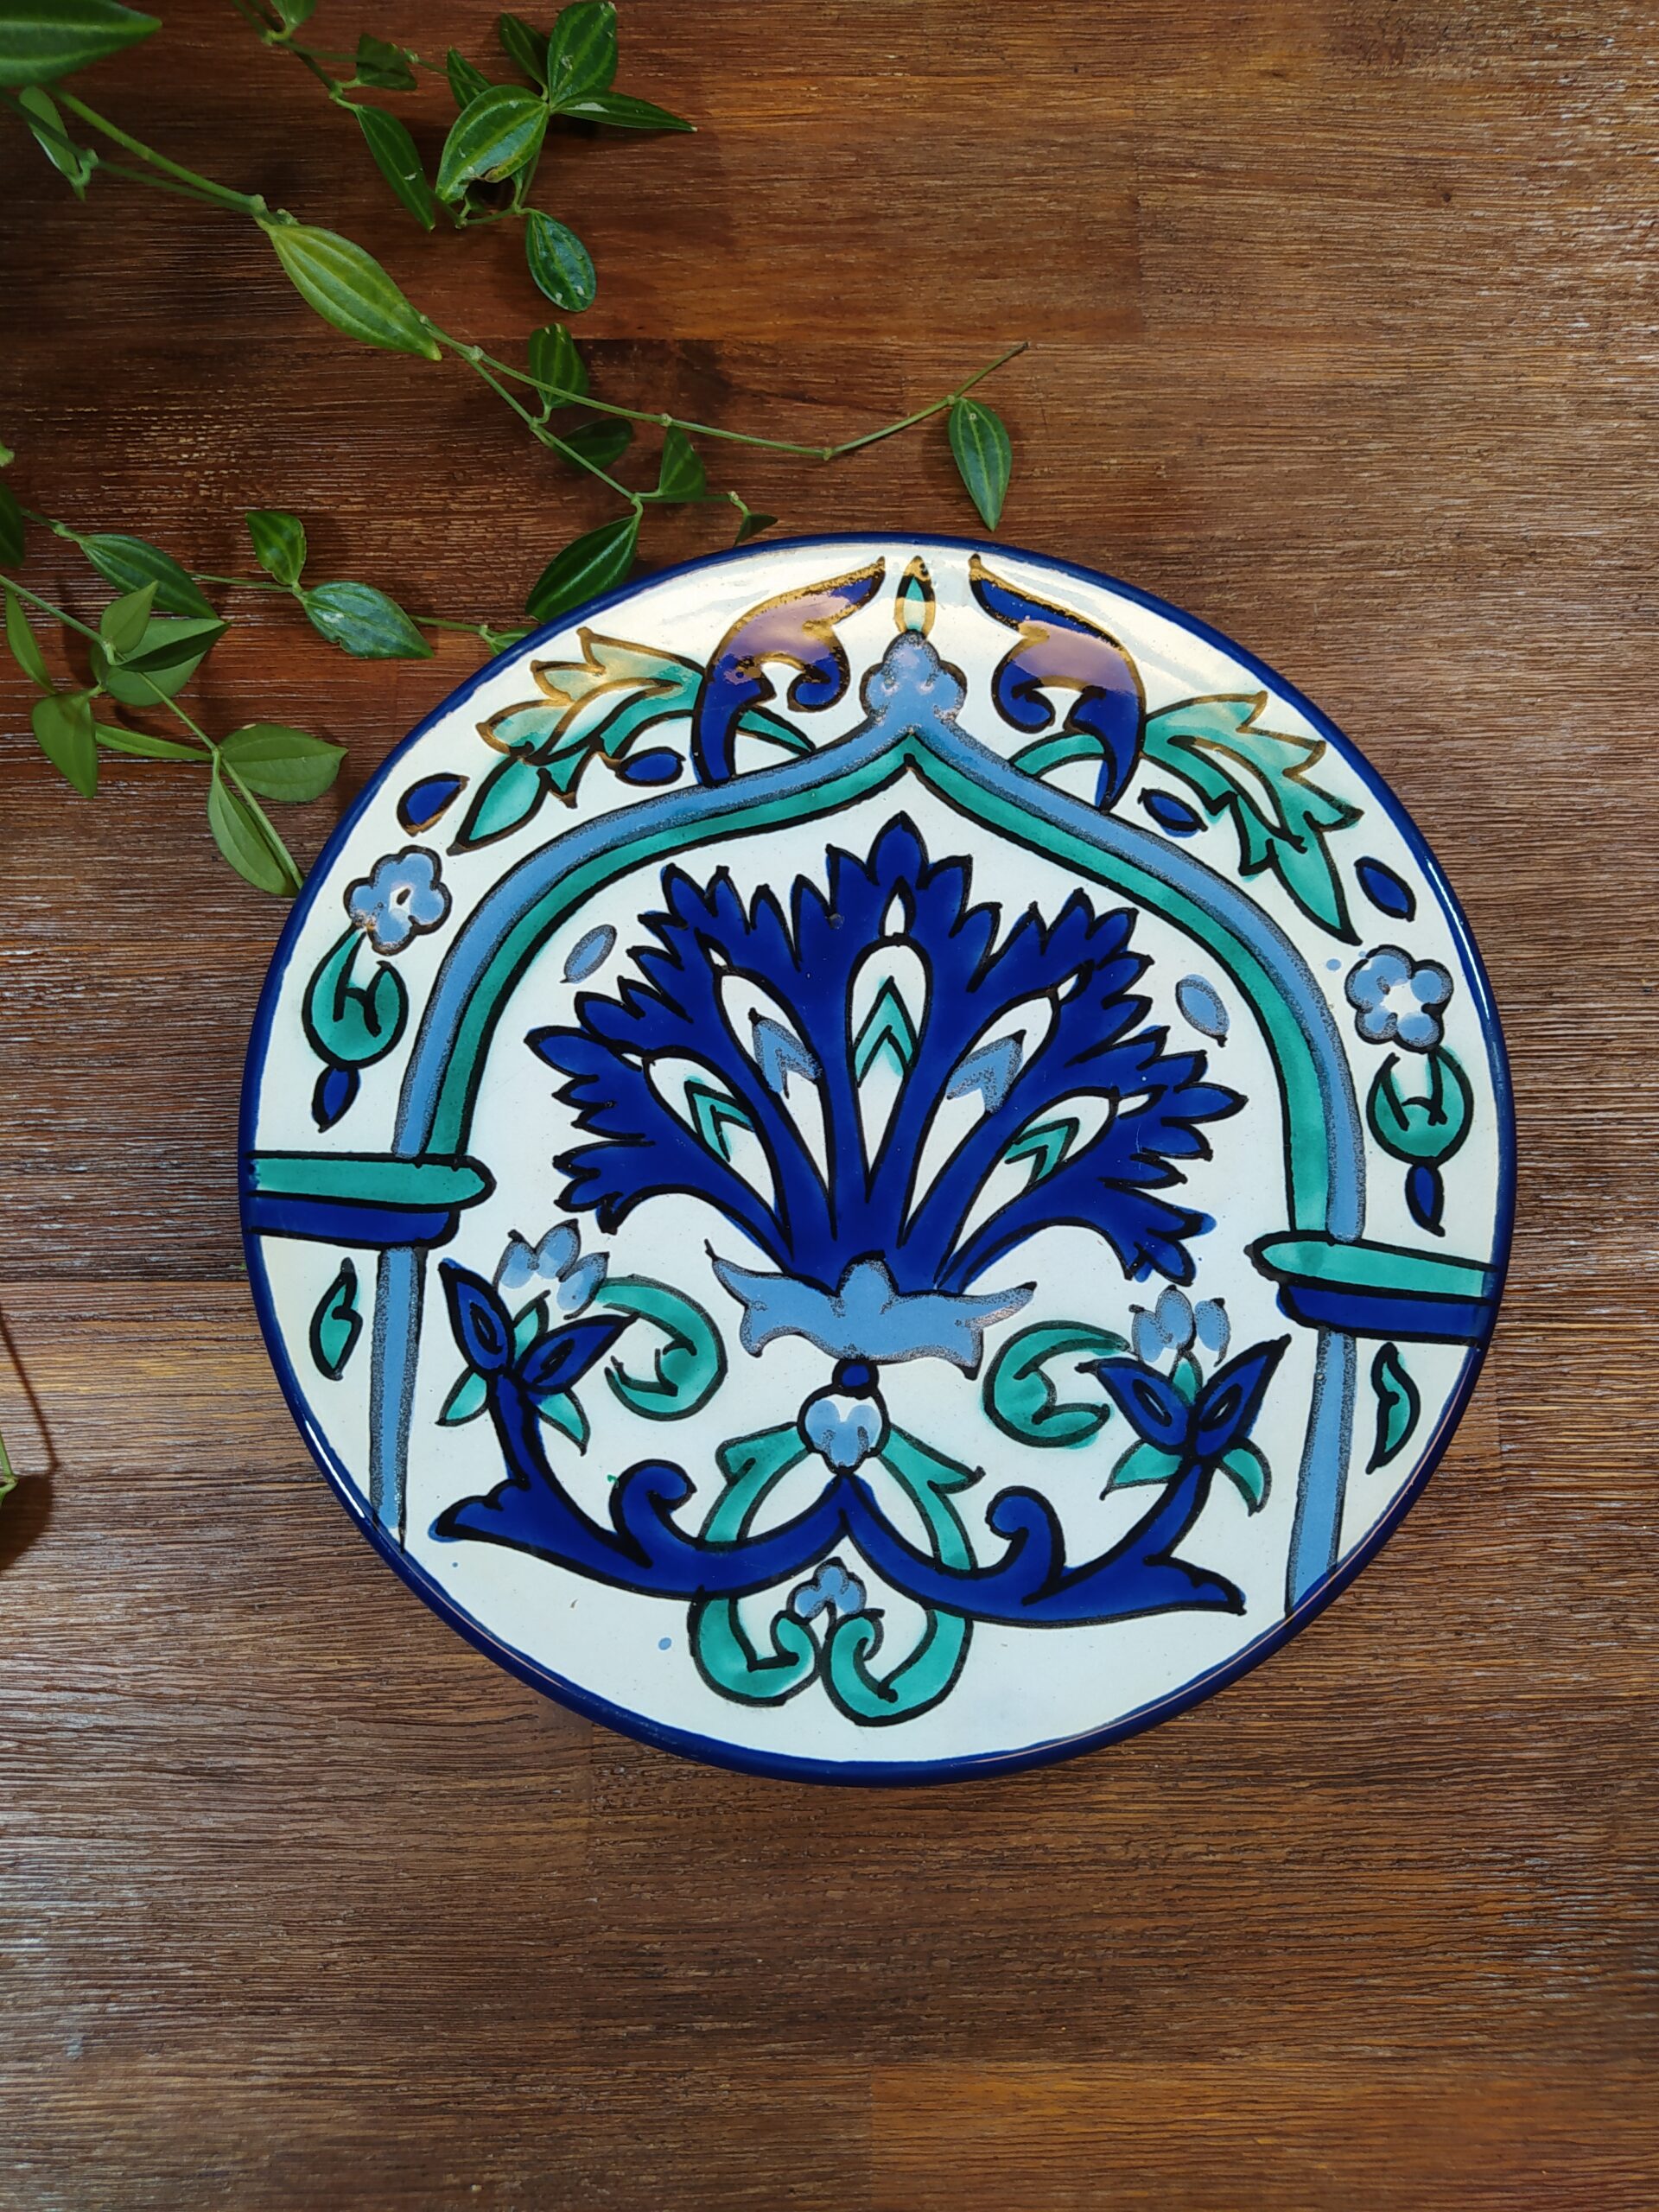 Assiette motifs orientaux fleuris et arabesques bleu et vert.